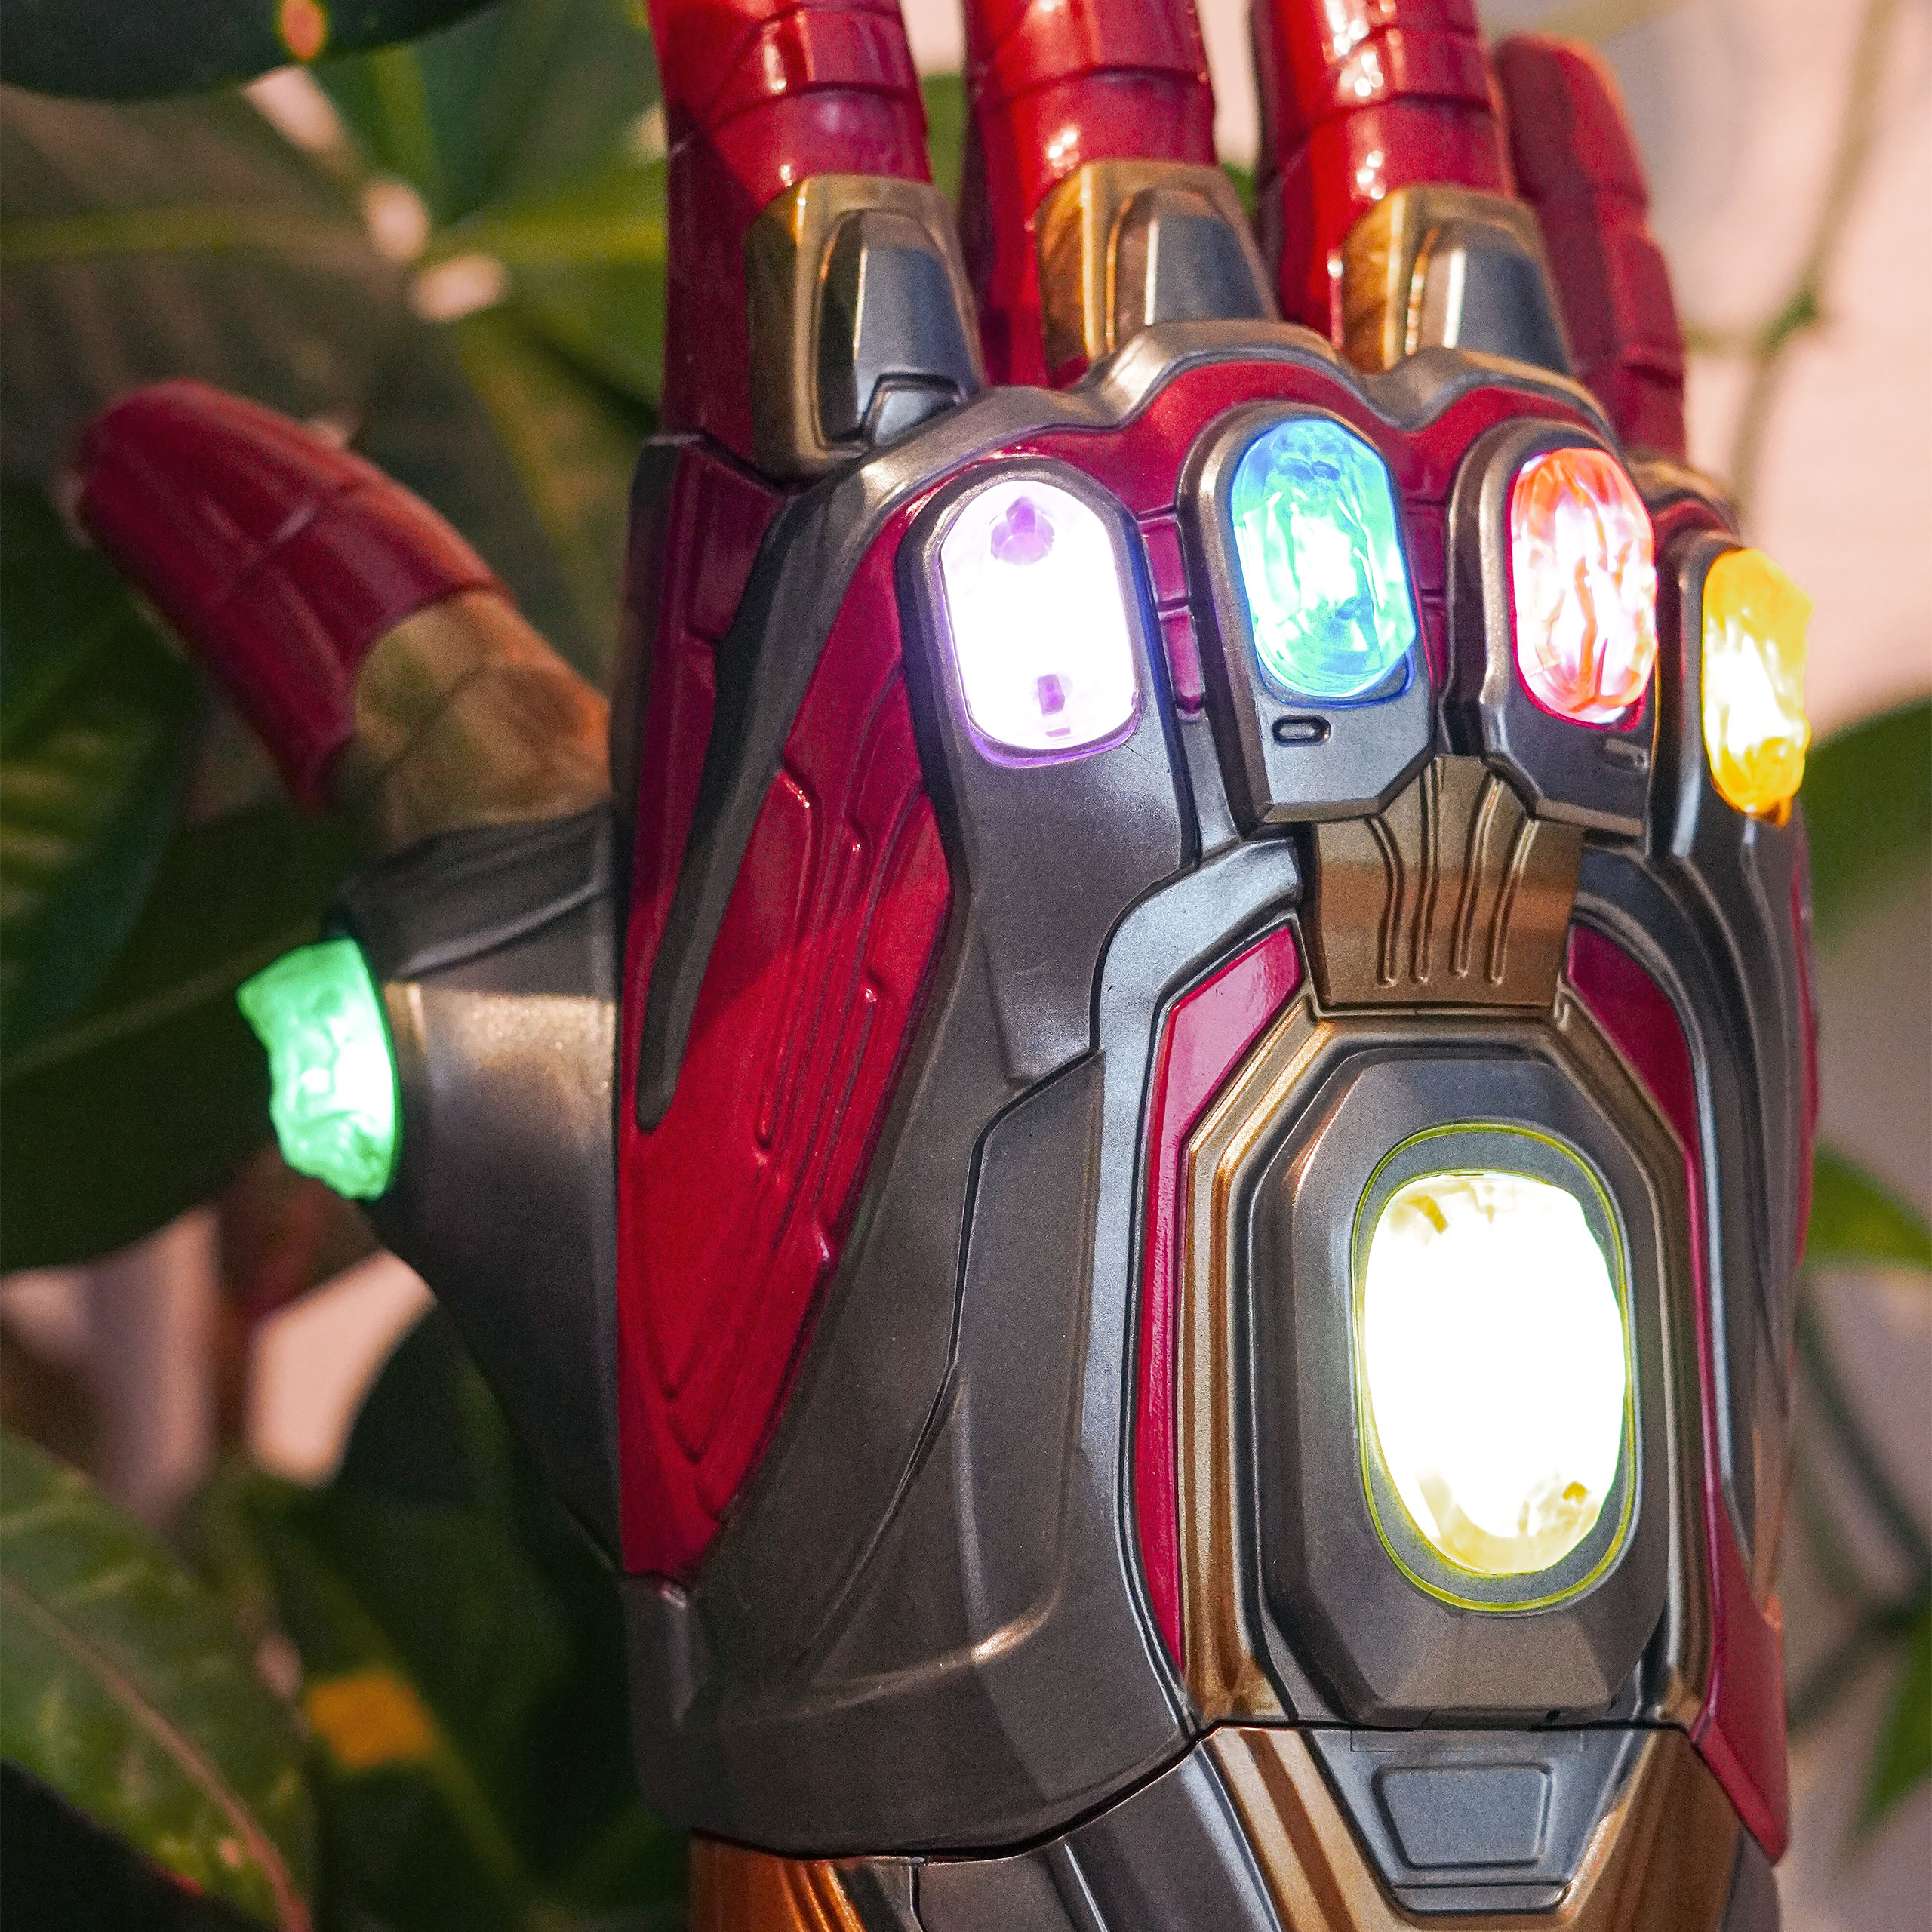 Avengers - Iron Man Gauntlet mit Licht und Sound